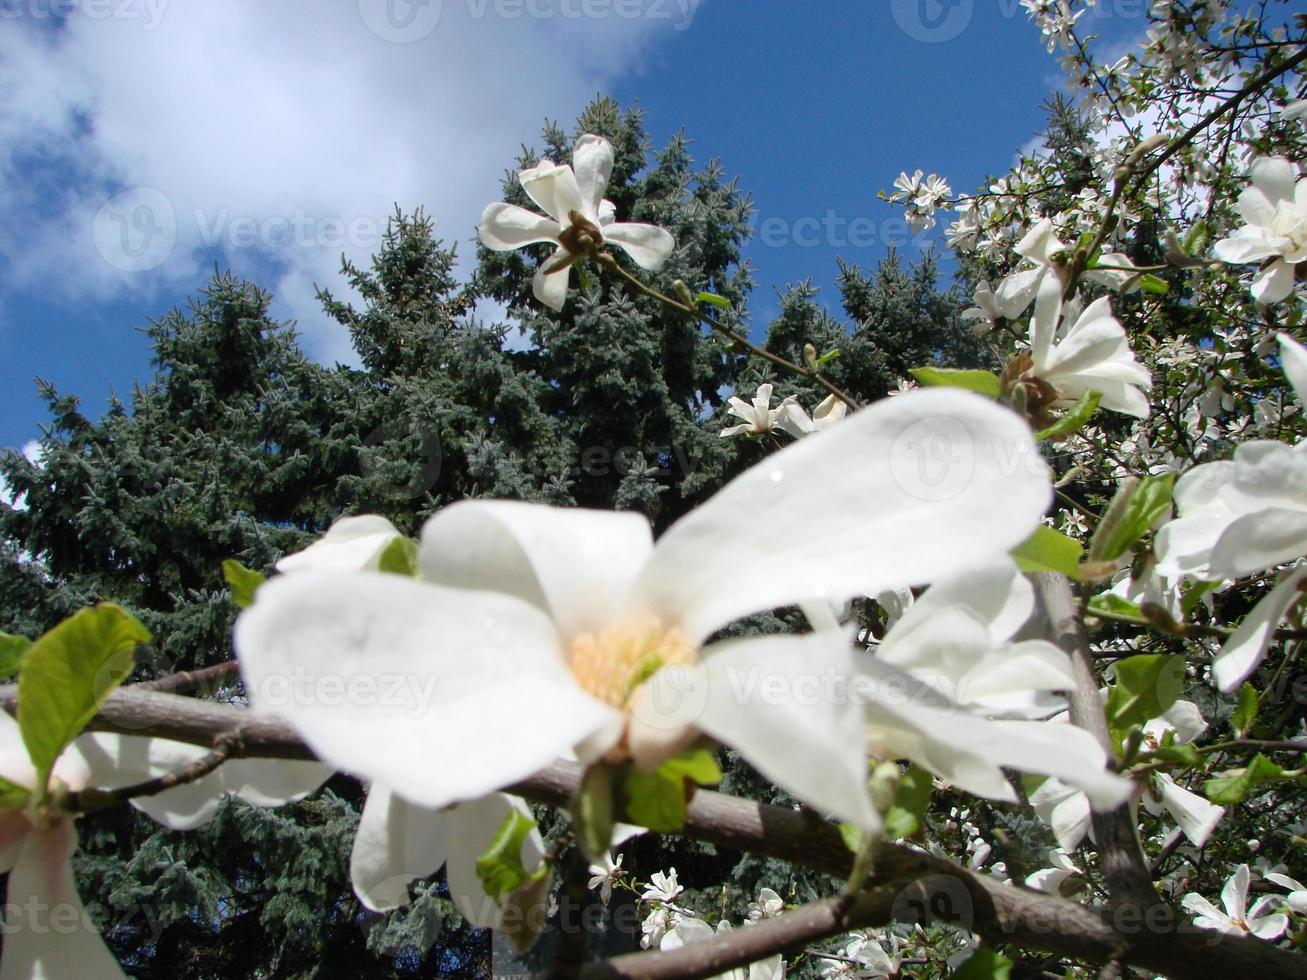 vit magnolia blomma mot de himmel närbild foto